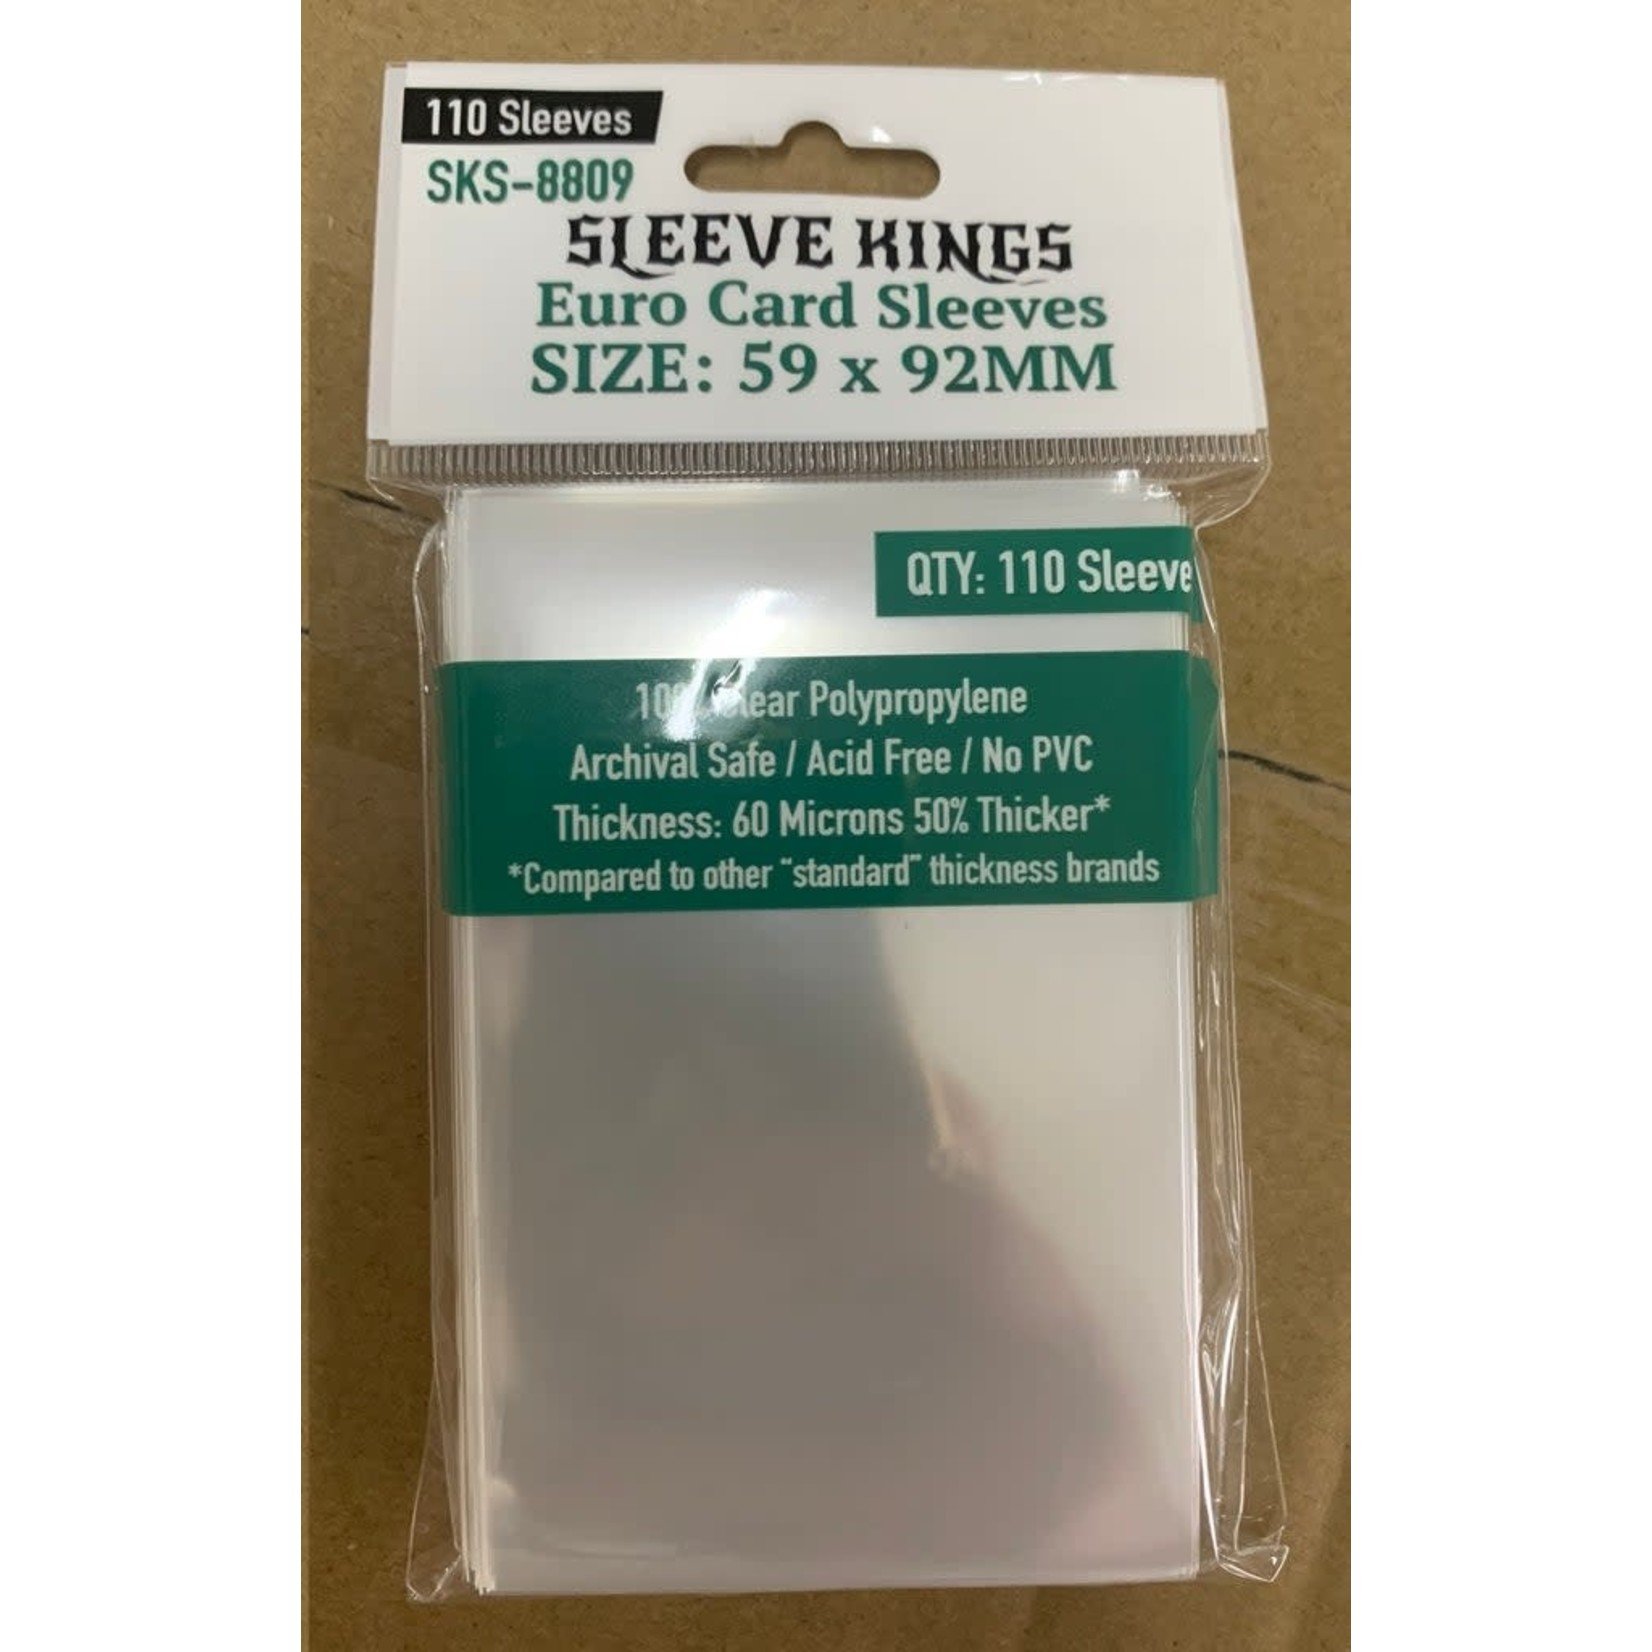 Sleeve Kings Sleeve Kings: Euro Card Sleeves (59x92mm) - 110 Pack